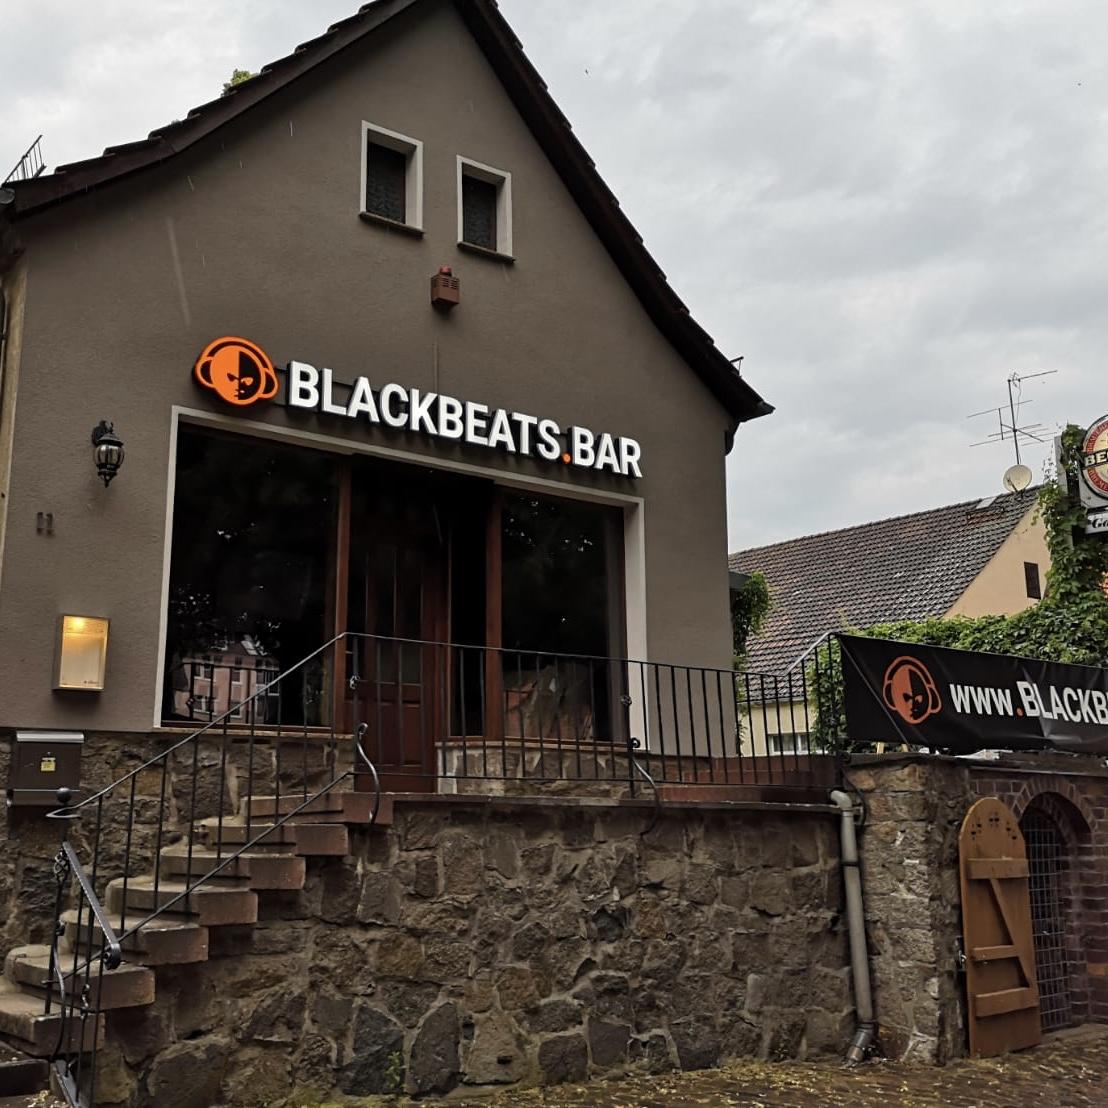 Restaurant "BLACKBEATS.BAR" in Schlieben